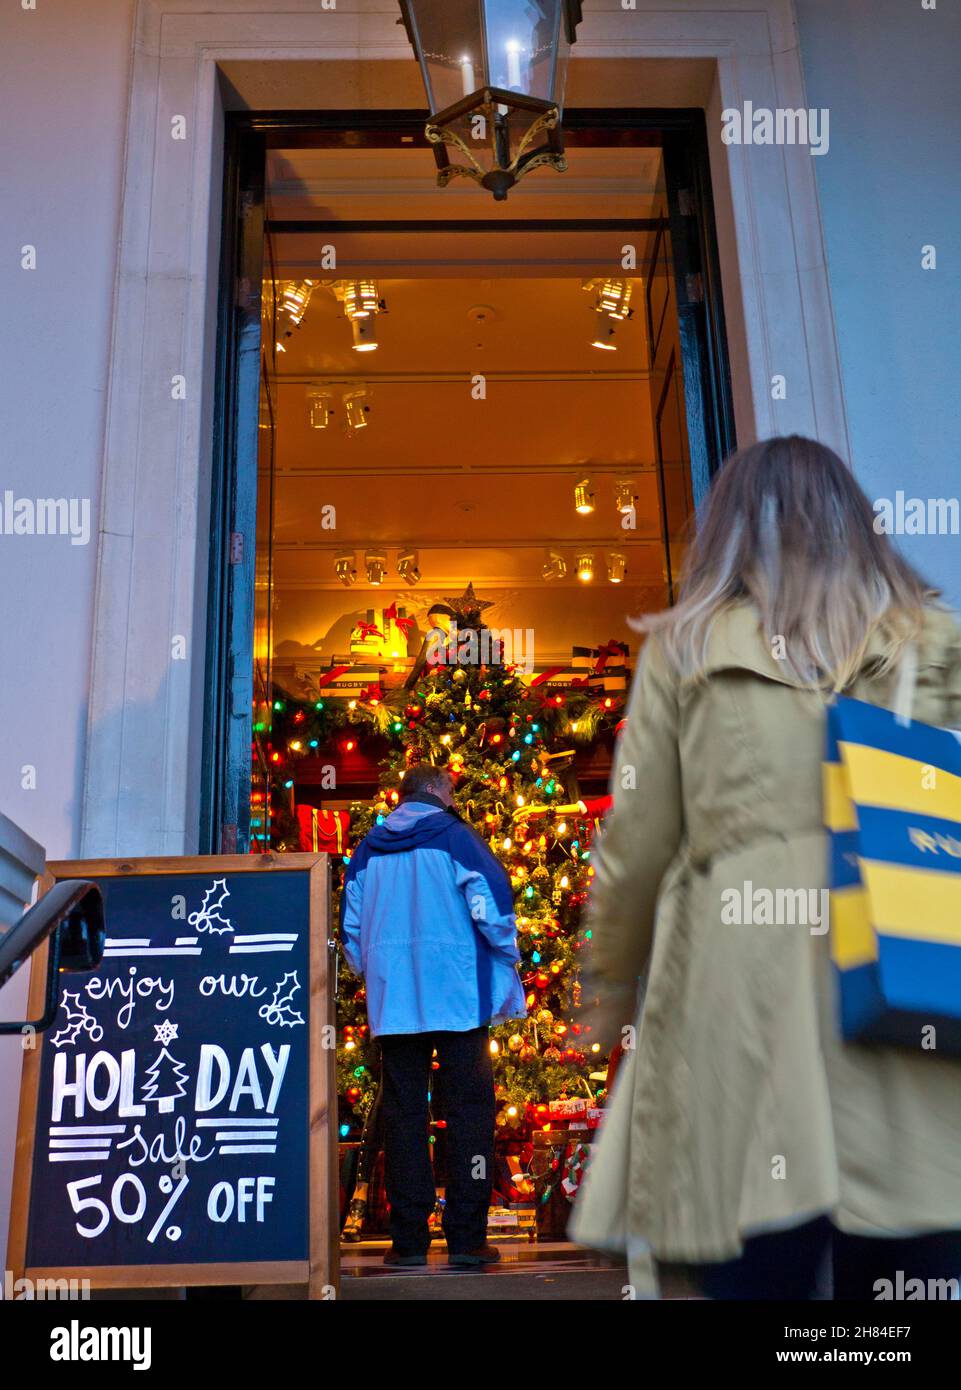 Covent Garden sconti sulle vendite natalizie 50% di sconto al dettaglio depressione stagione dello shopping natalizio . Prima di Natale, le prime riduzioni delle vendite stimoleranno una stagione commerciale molto difficile e volatile a Londra UK Foto Stock